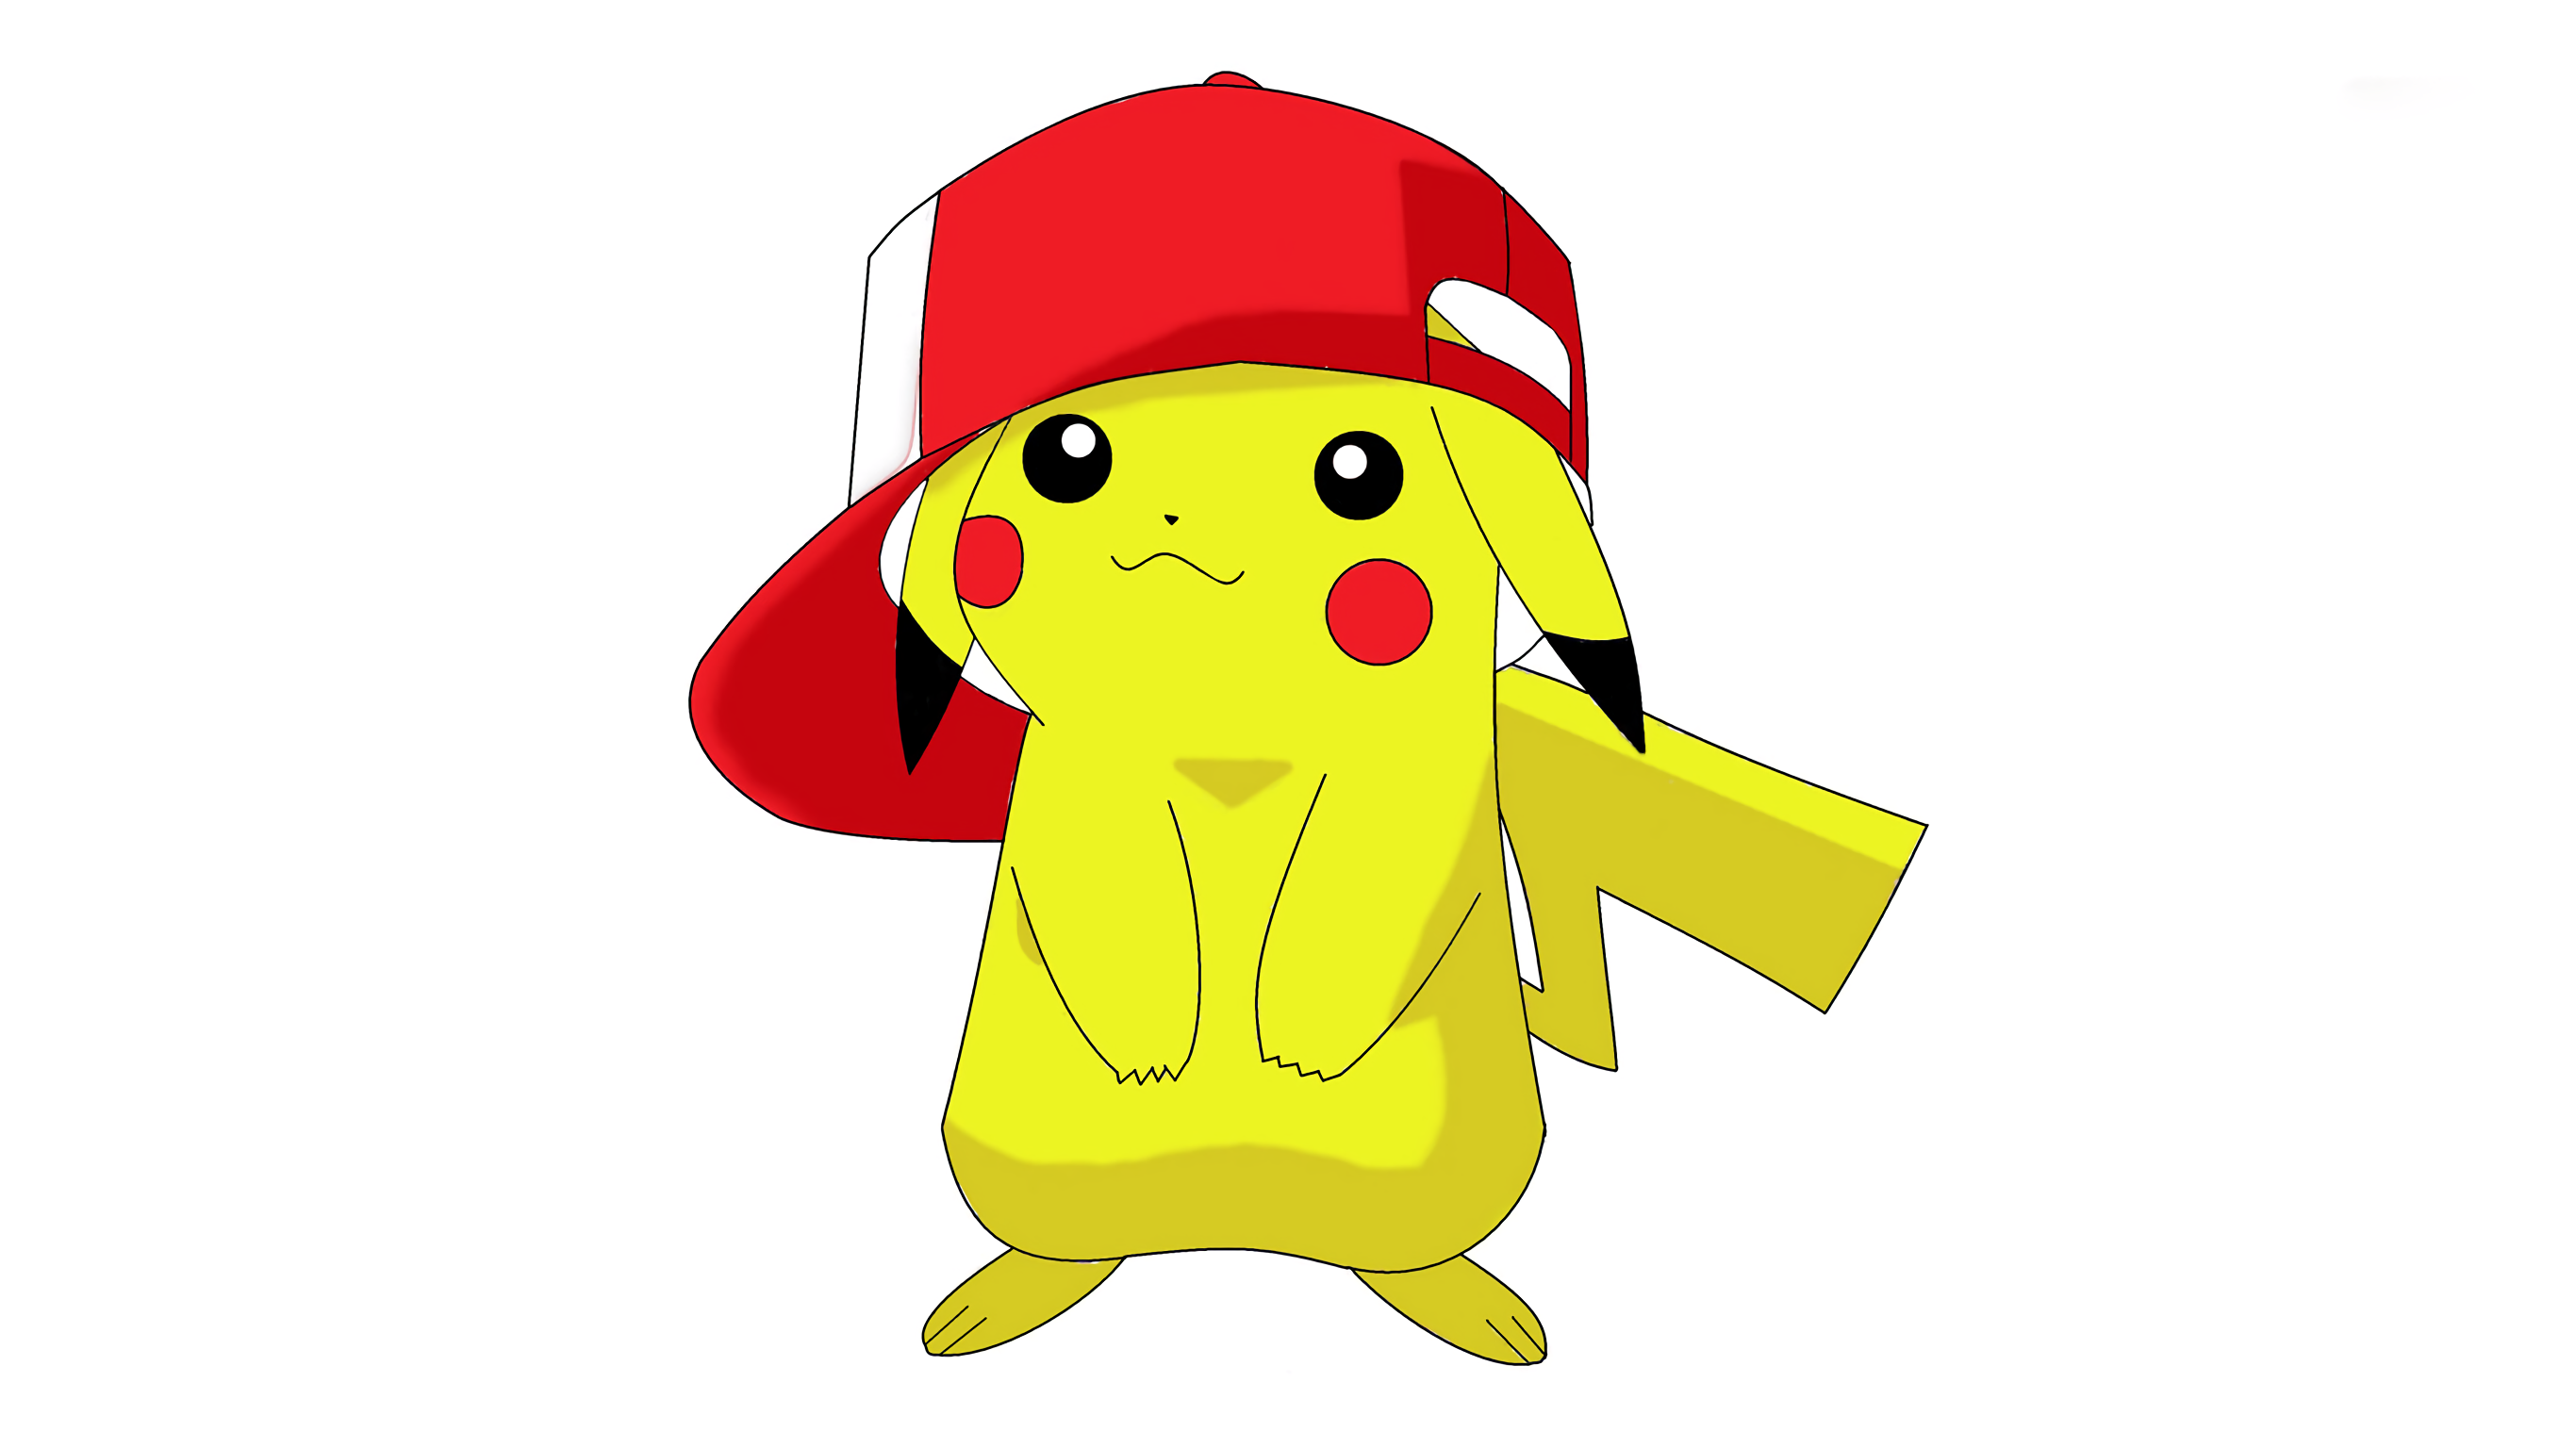 Gallery For Gt Pokemon Pikachu Wallpaper